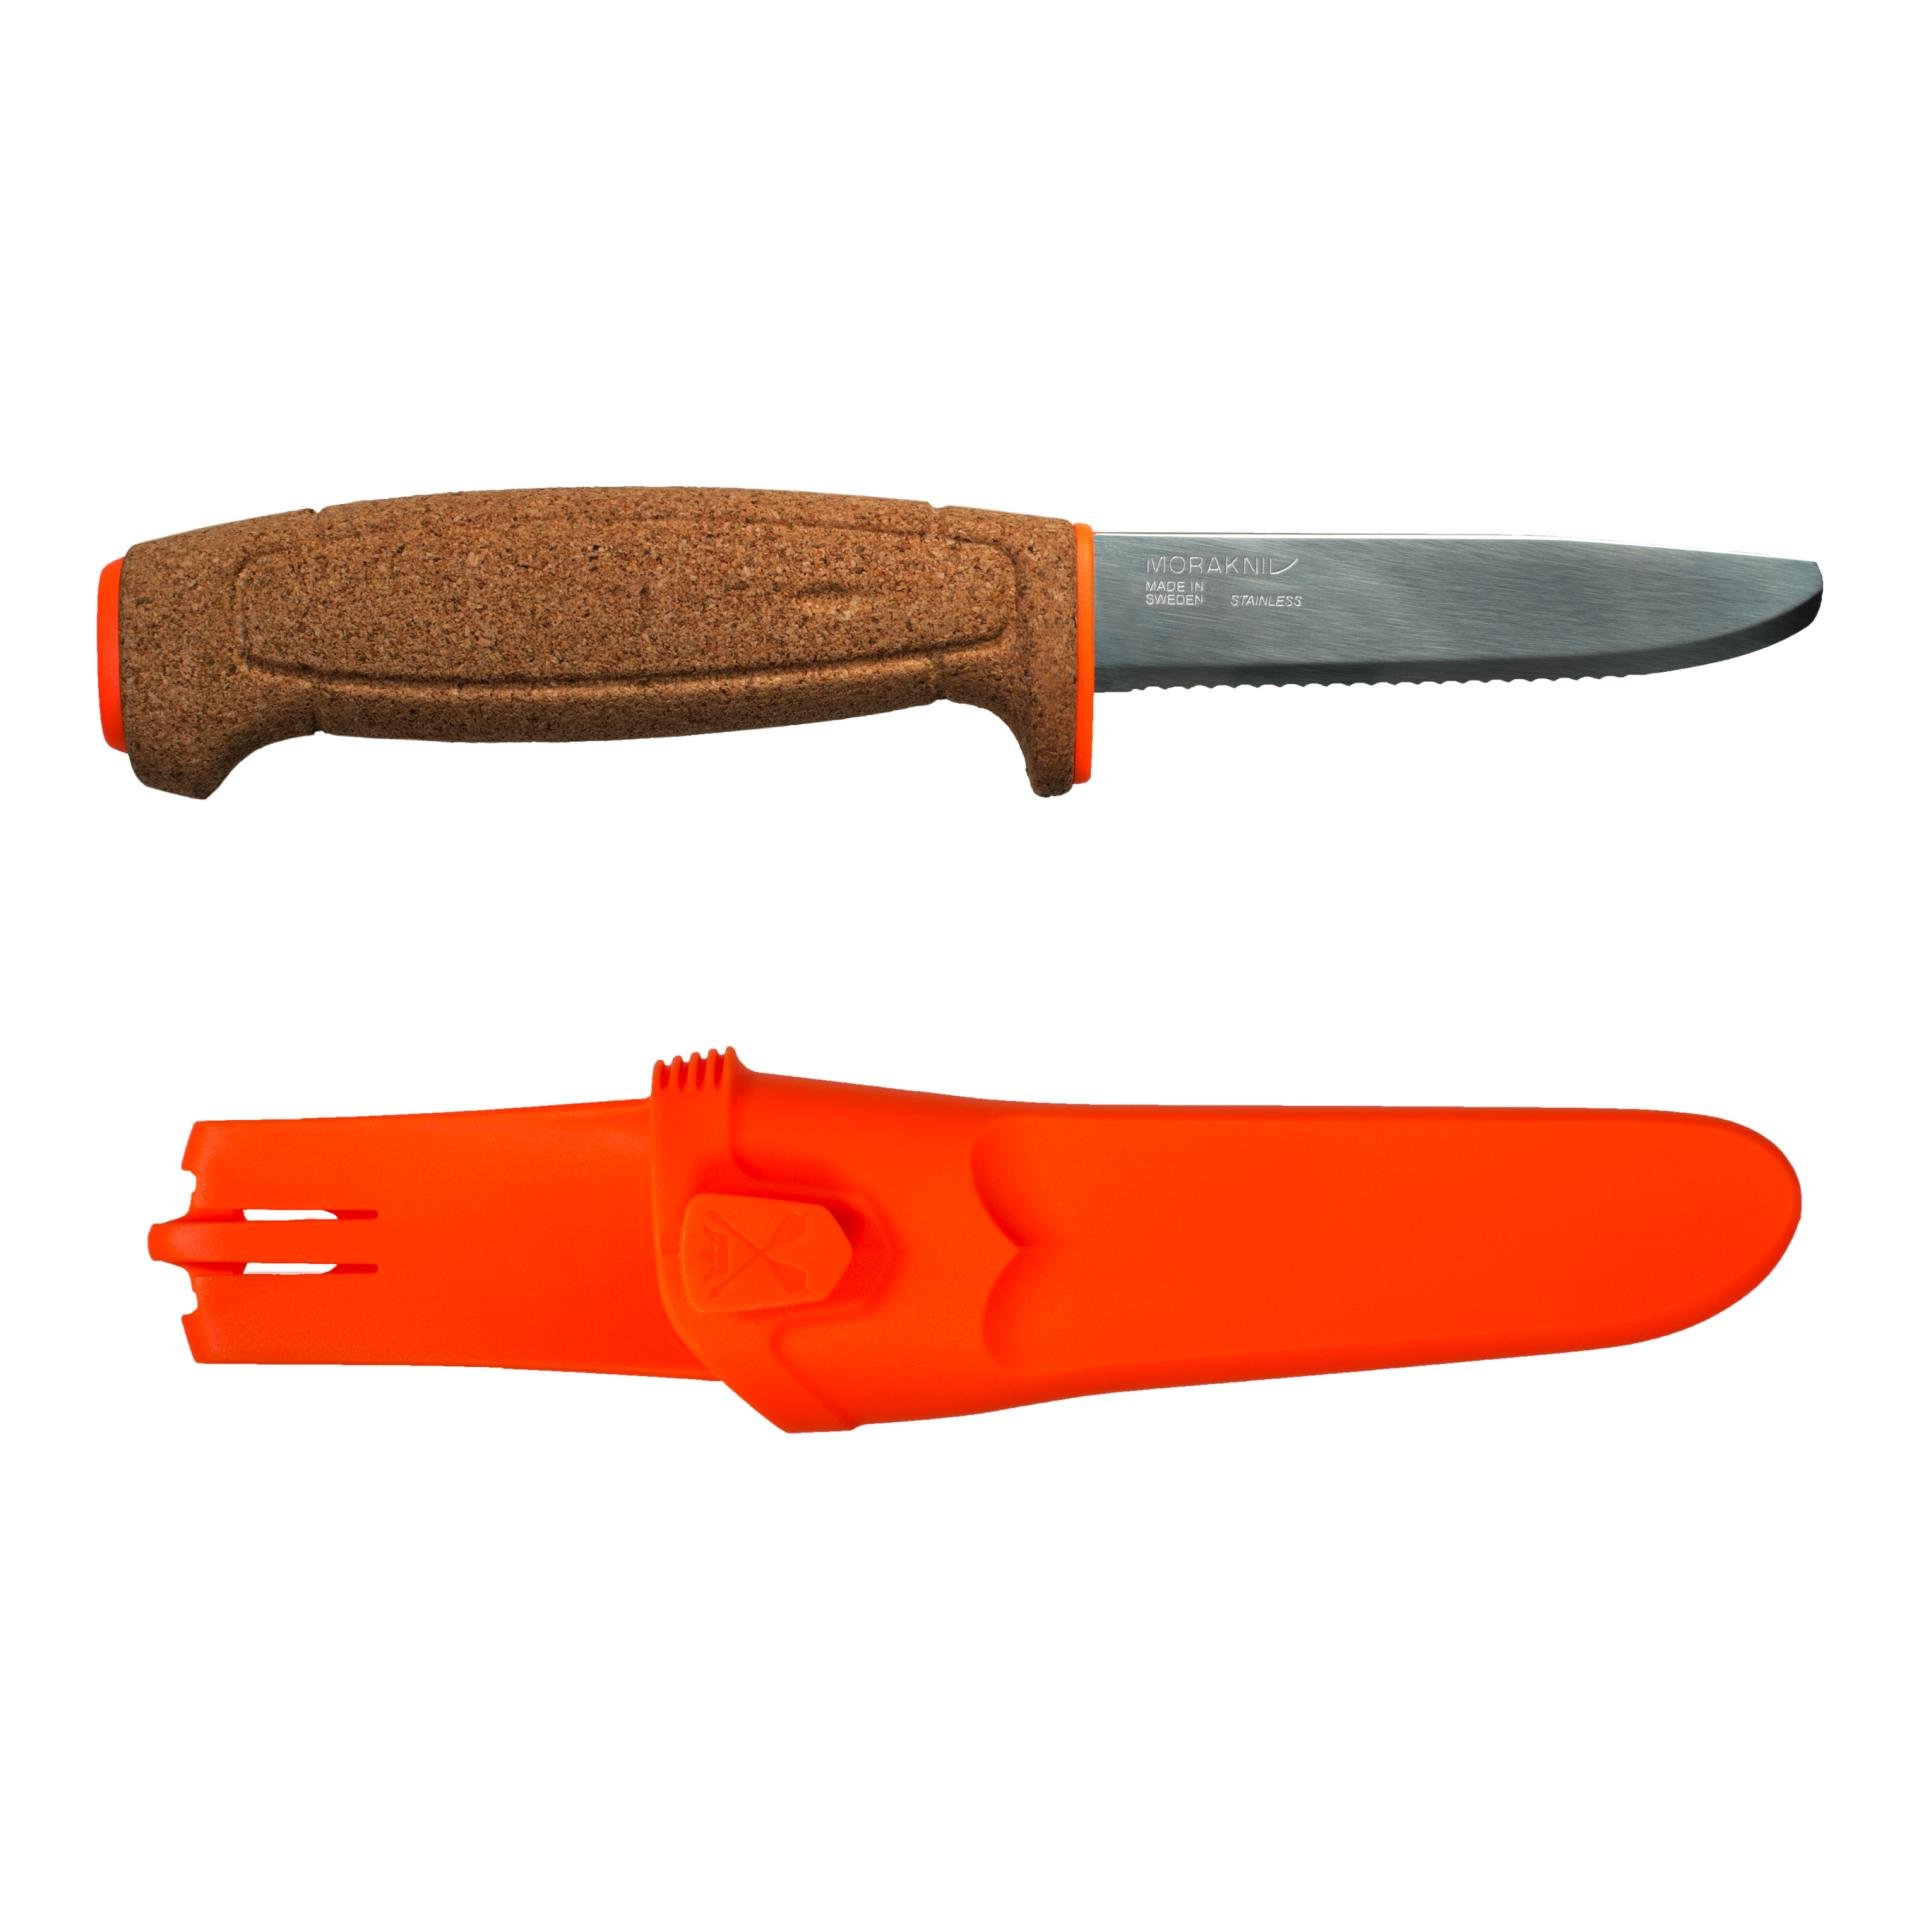 Morakniv Floating knife orange